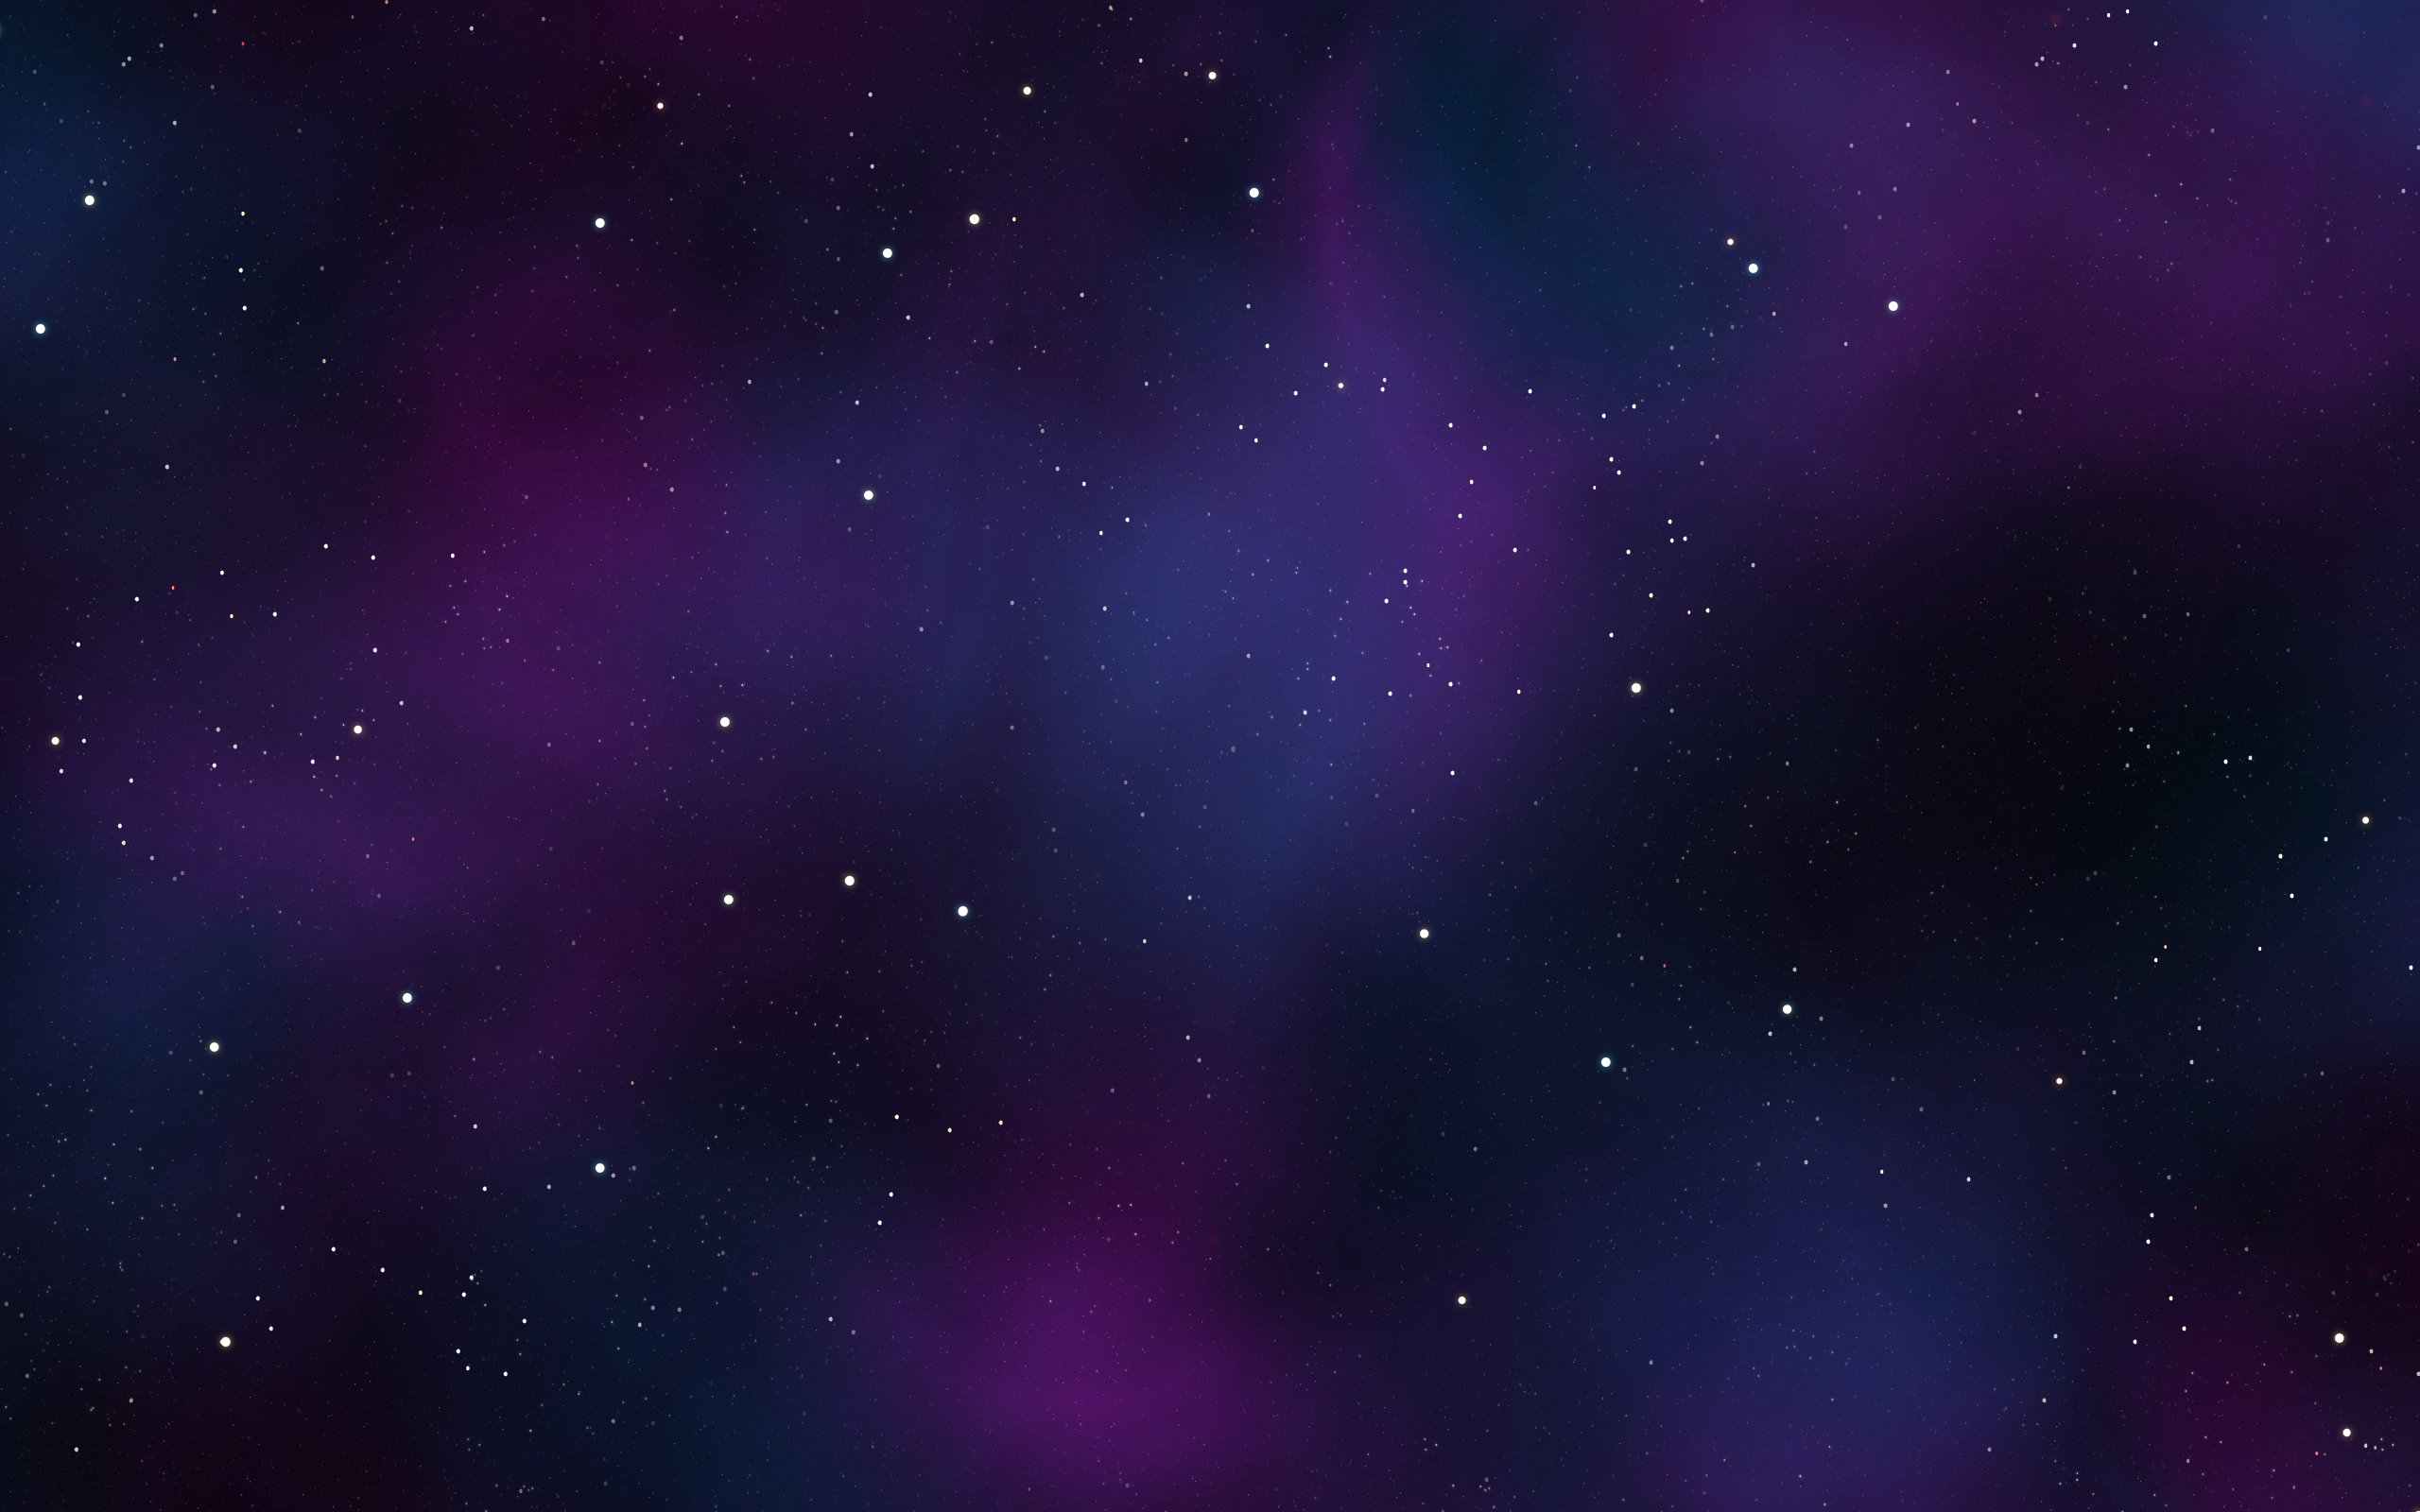 outer space, stars, digital art - desktop wallpaper